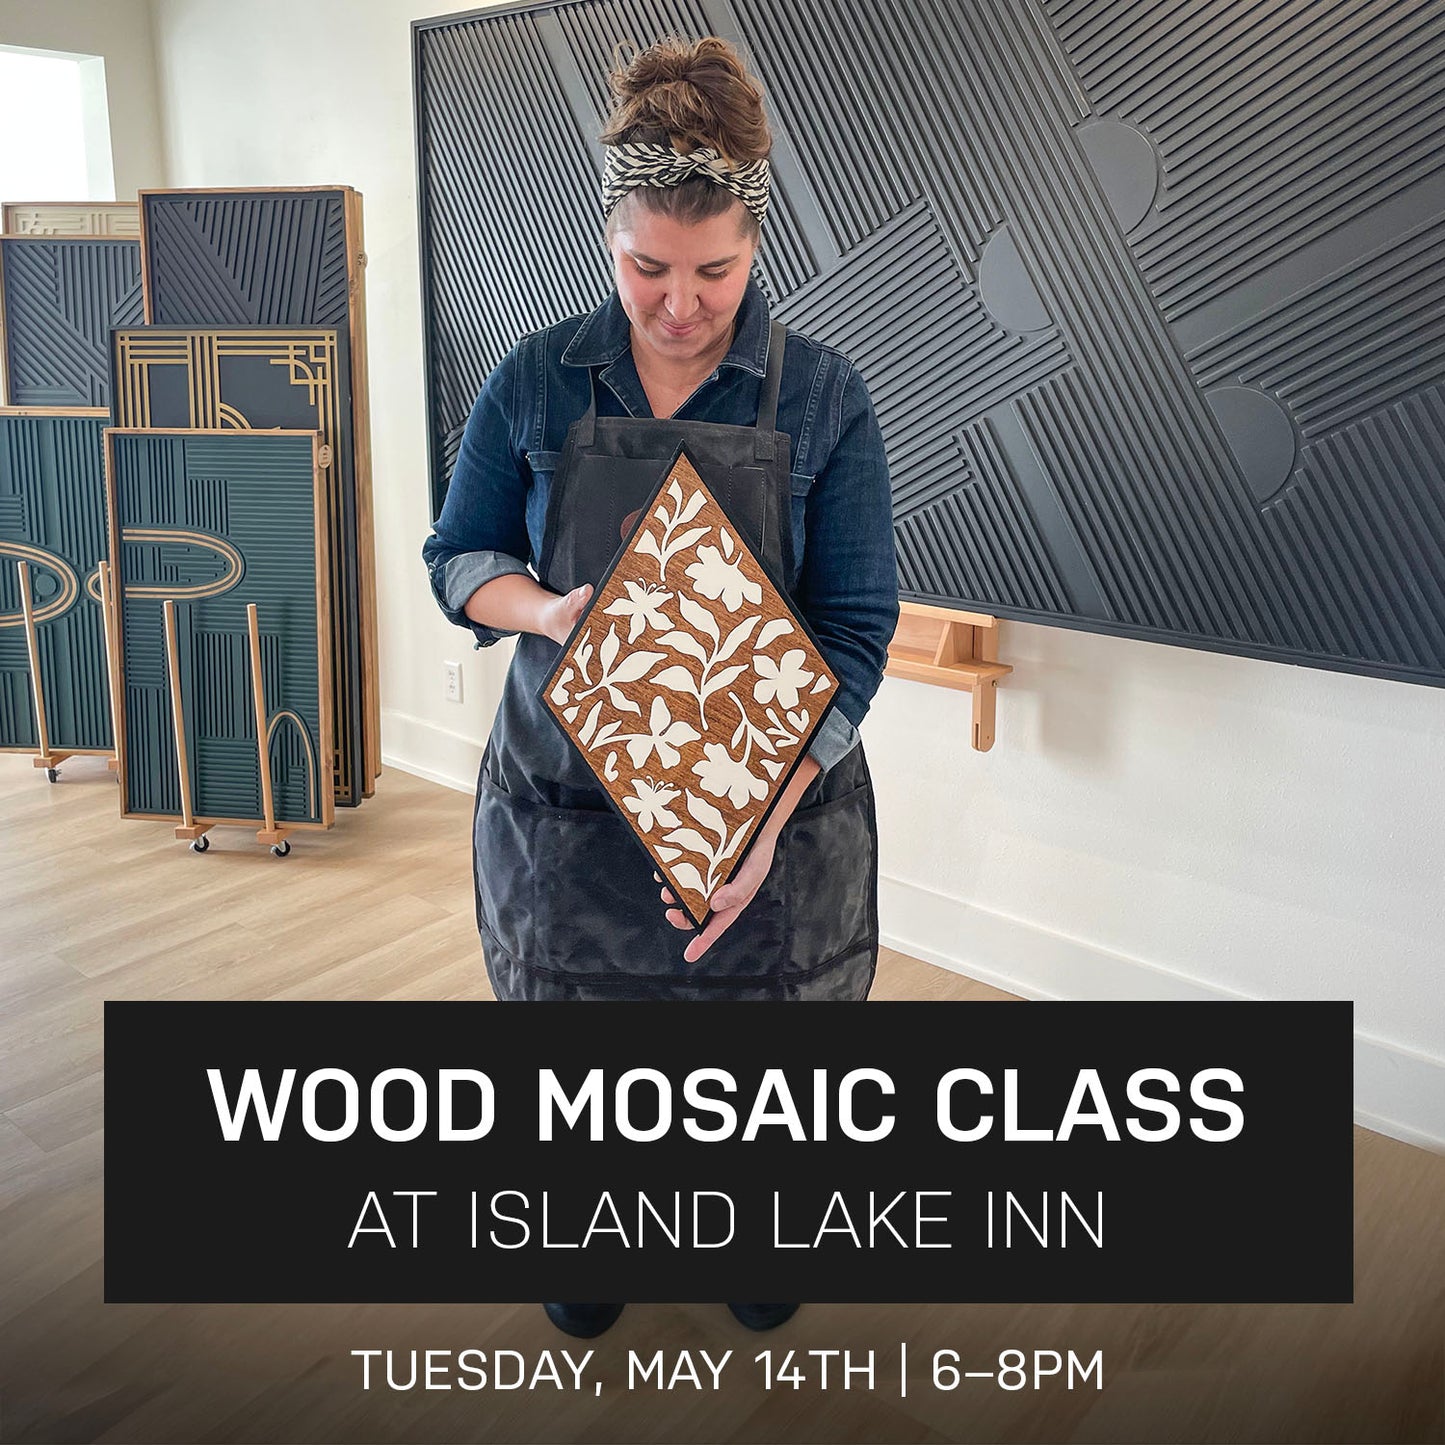 Bloom Wood Mosaic Class at Island Lake Inn | May 14th @ 6pm